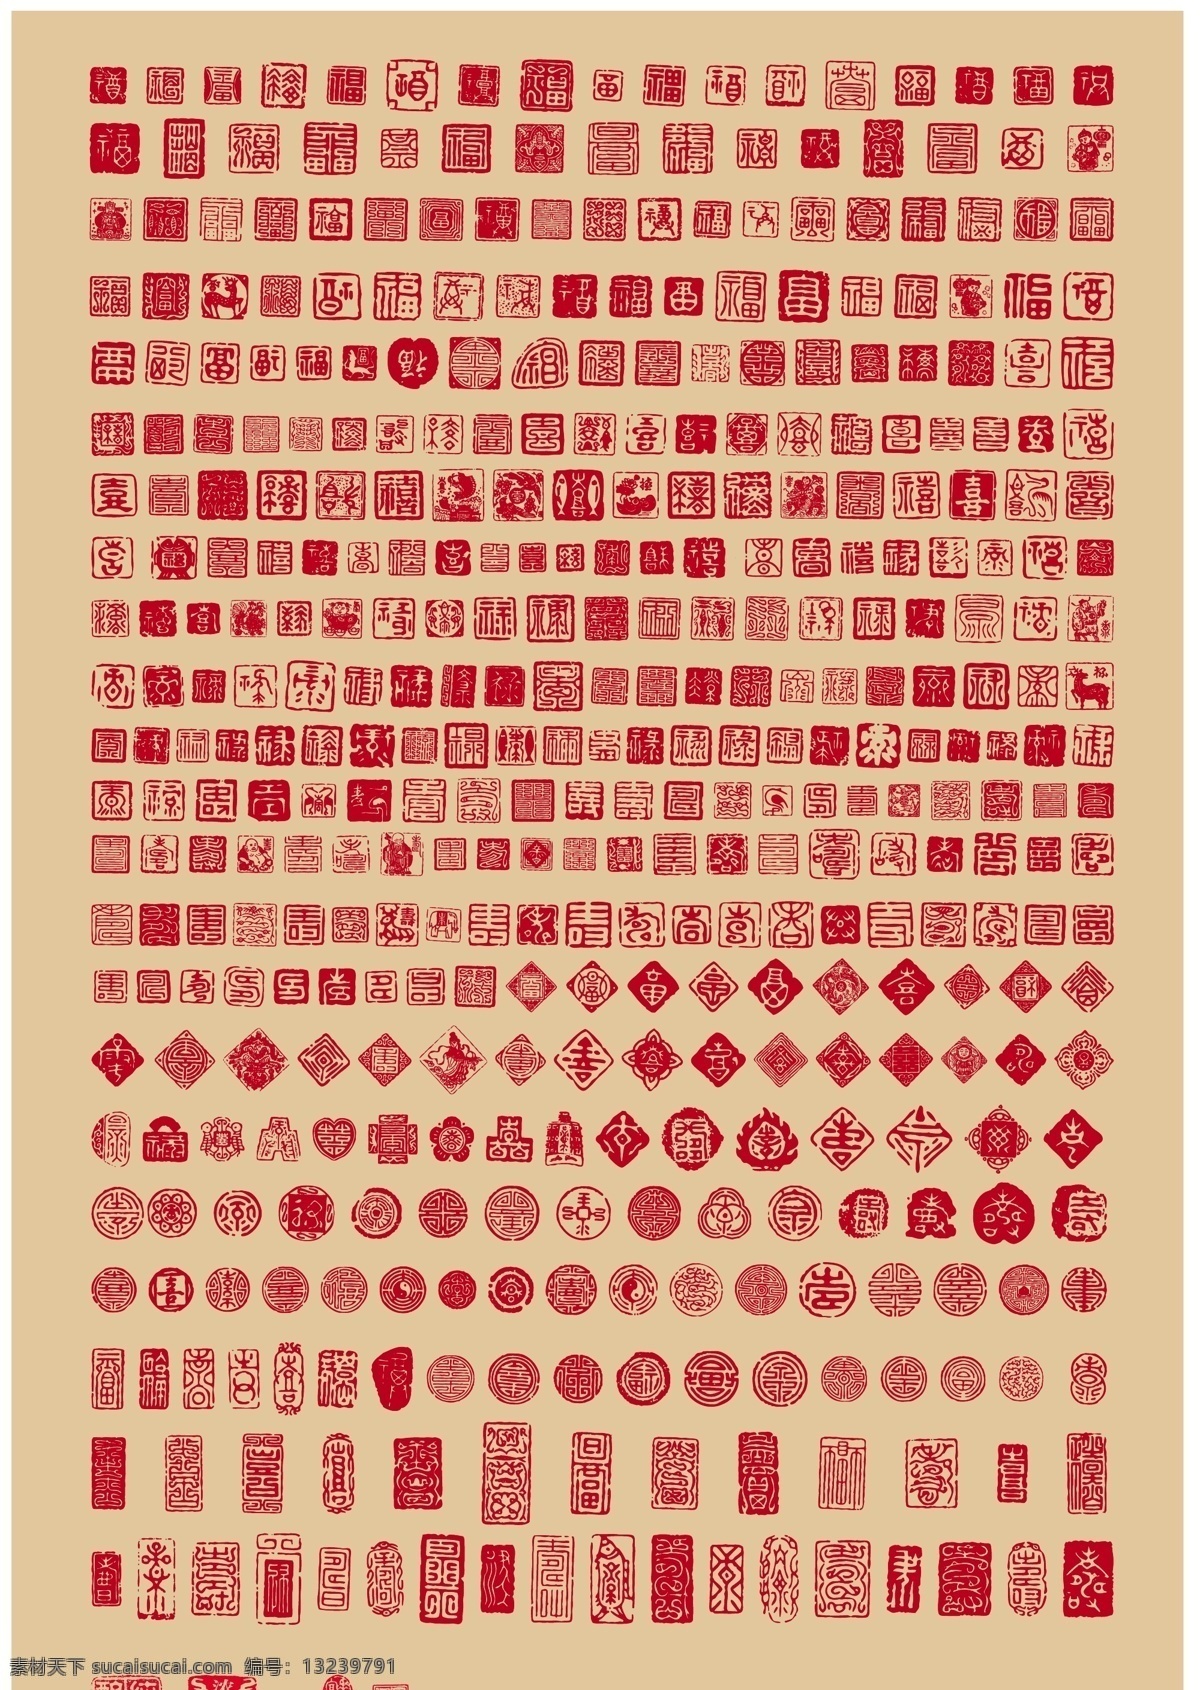 印章大全 印章 盖印 正方形 古代 中国 汉字 文化艺术 传统文化